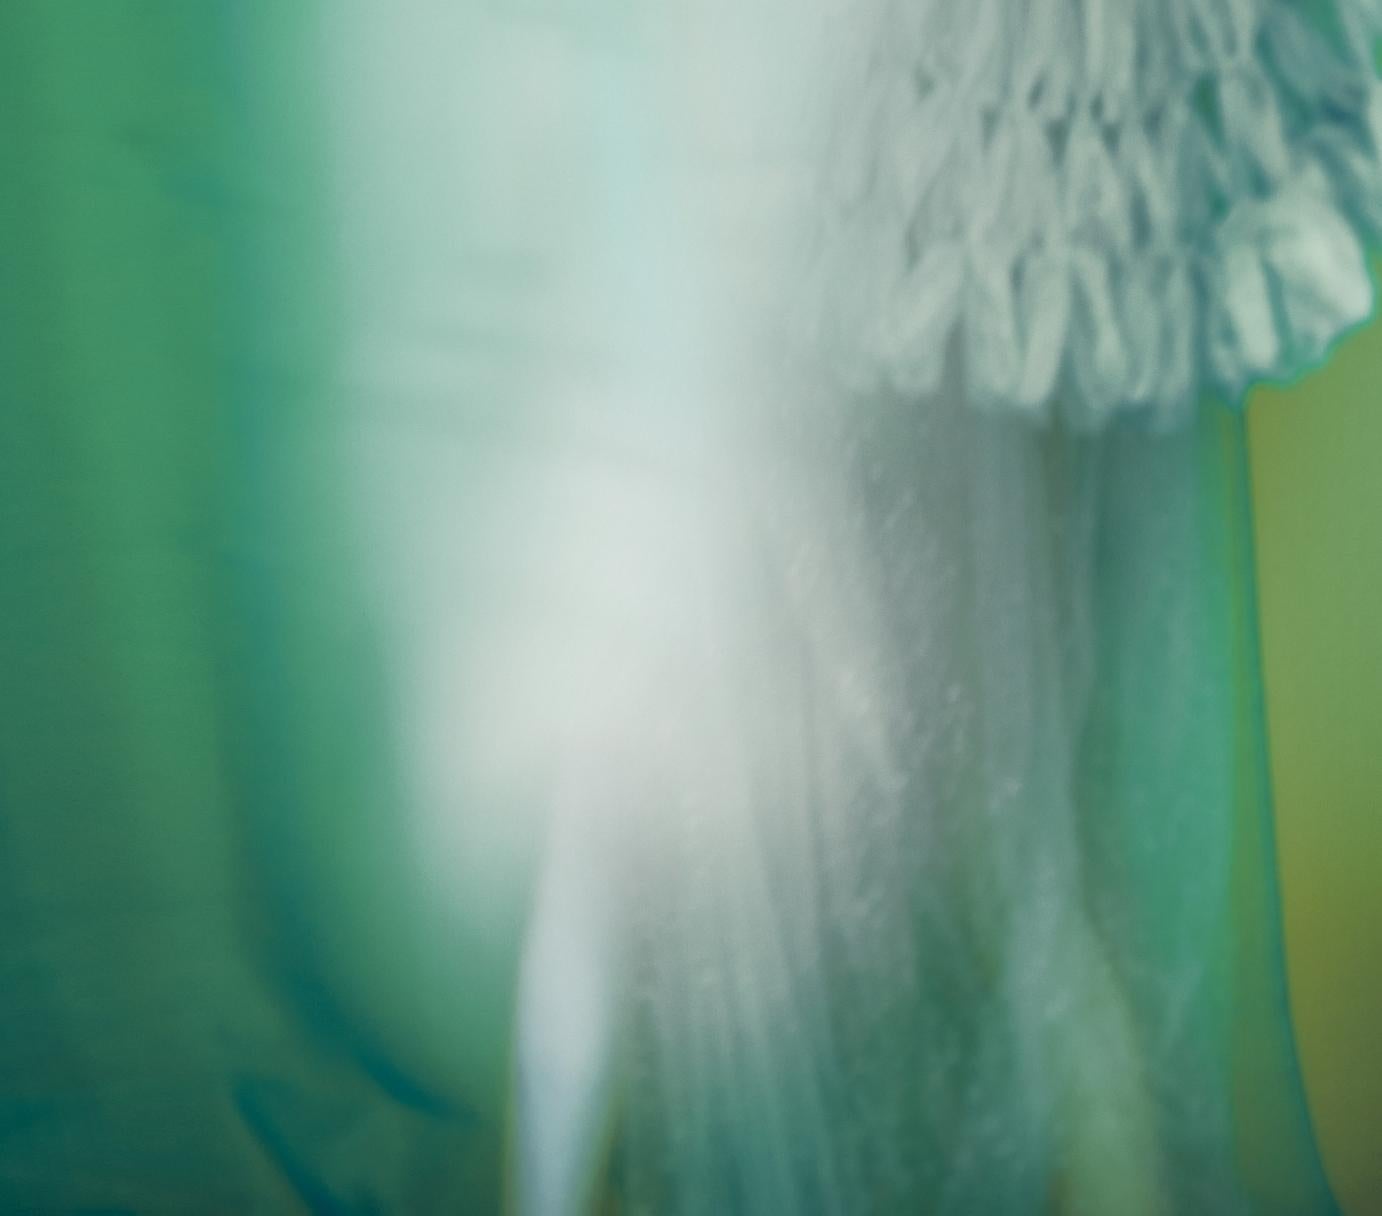 Not titled yet – Erik Madigan Heck, Fashion, Human, Art, Dress For Sale 2